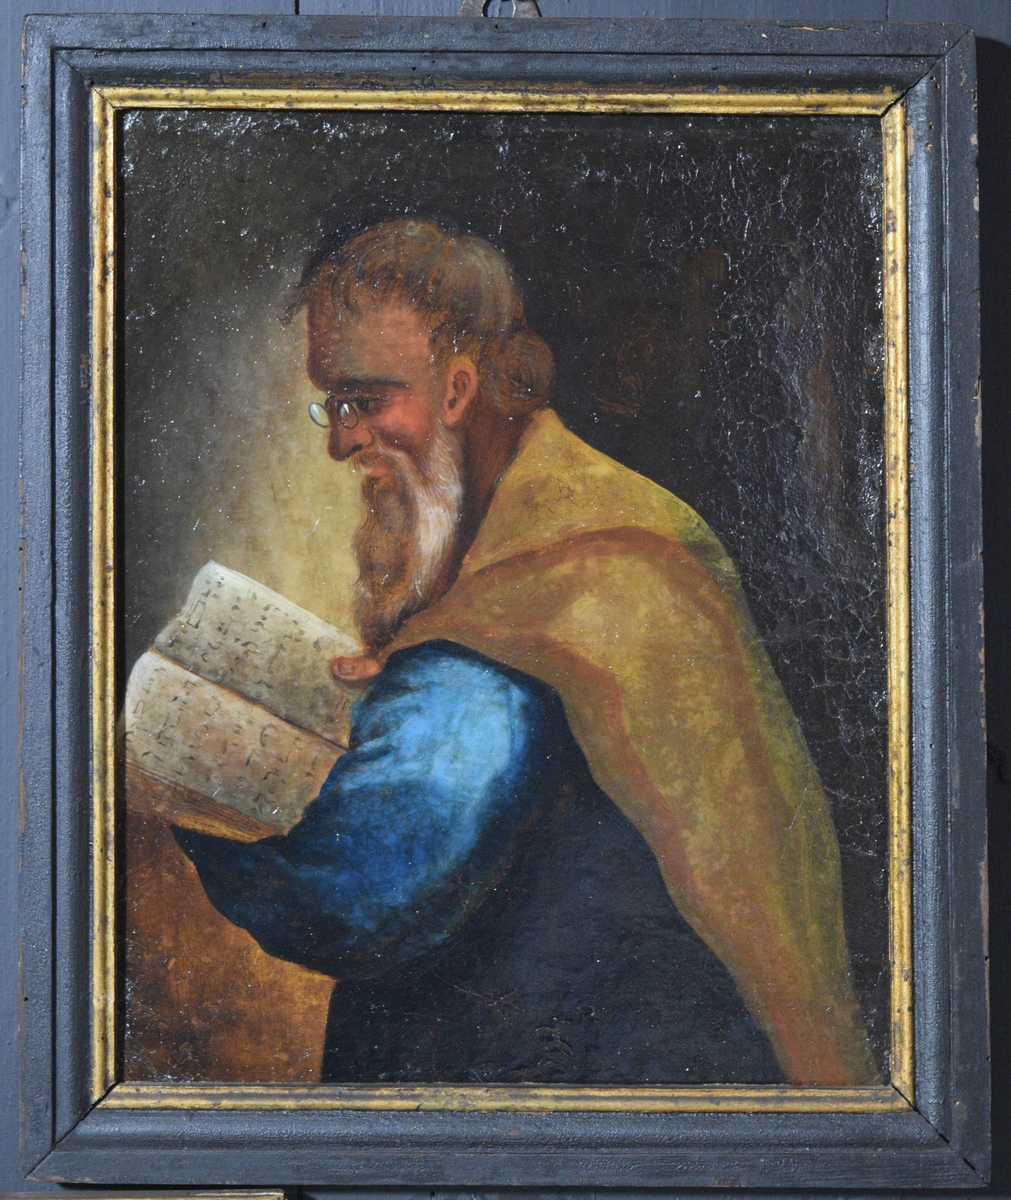 Bildet viser en eldre mann med skjegg som leser i en bok med hebraisklignende bokstaver antydet. Mannen er vendt mot venstre og sees tilnærmet i profil. Haner kledd i en blå kjortel(?) og han har en gulbrun kappe over skuldrene. På nesten sitter en lorgnett.